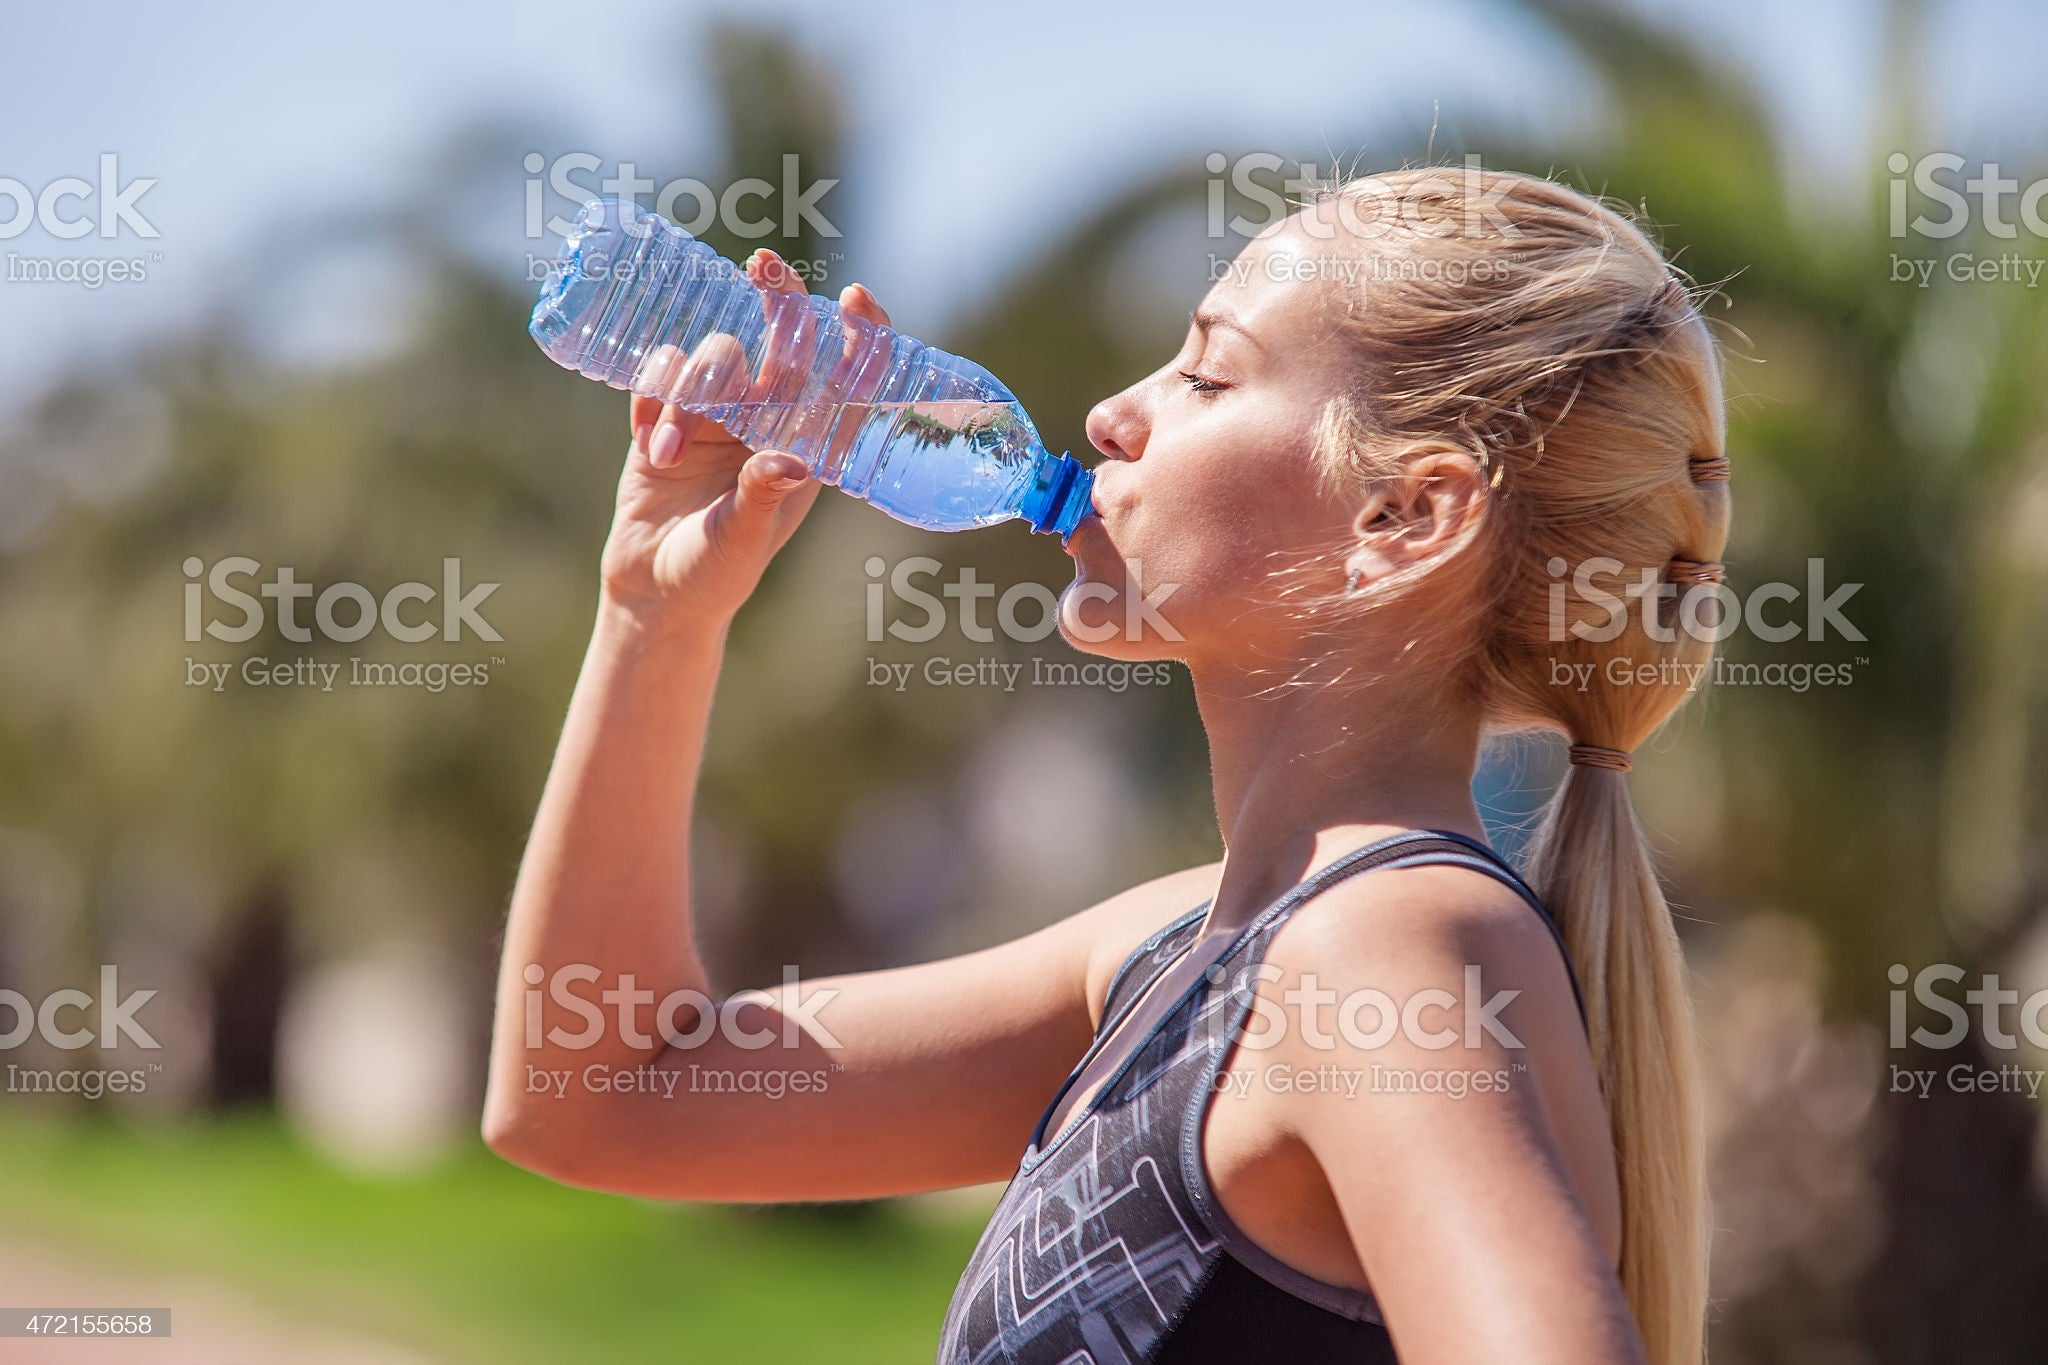 Drink Plenty of Water